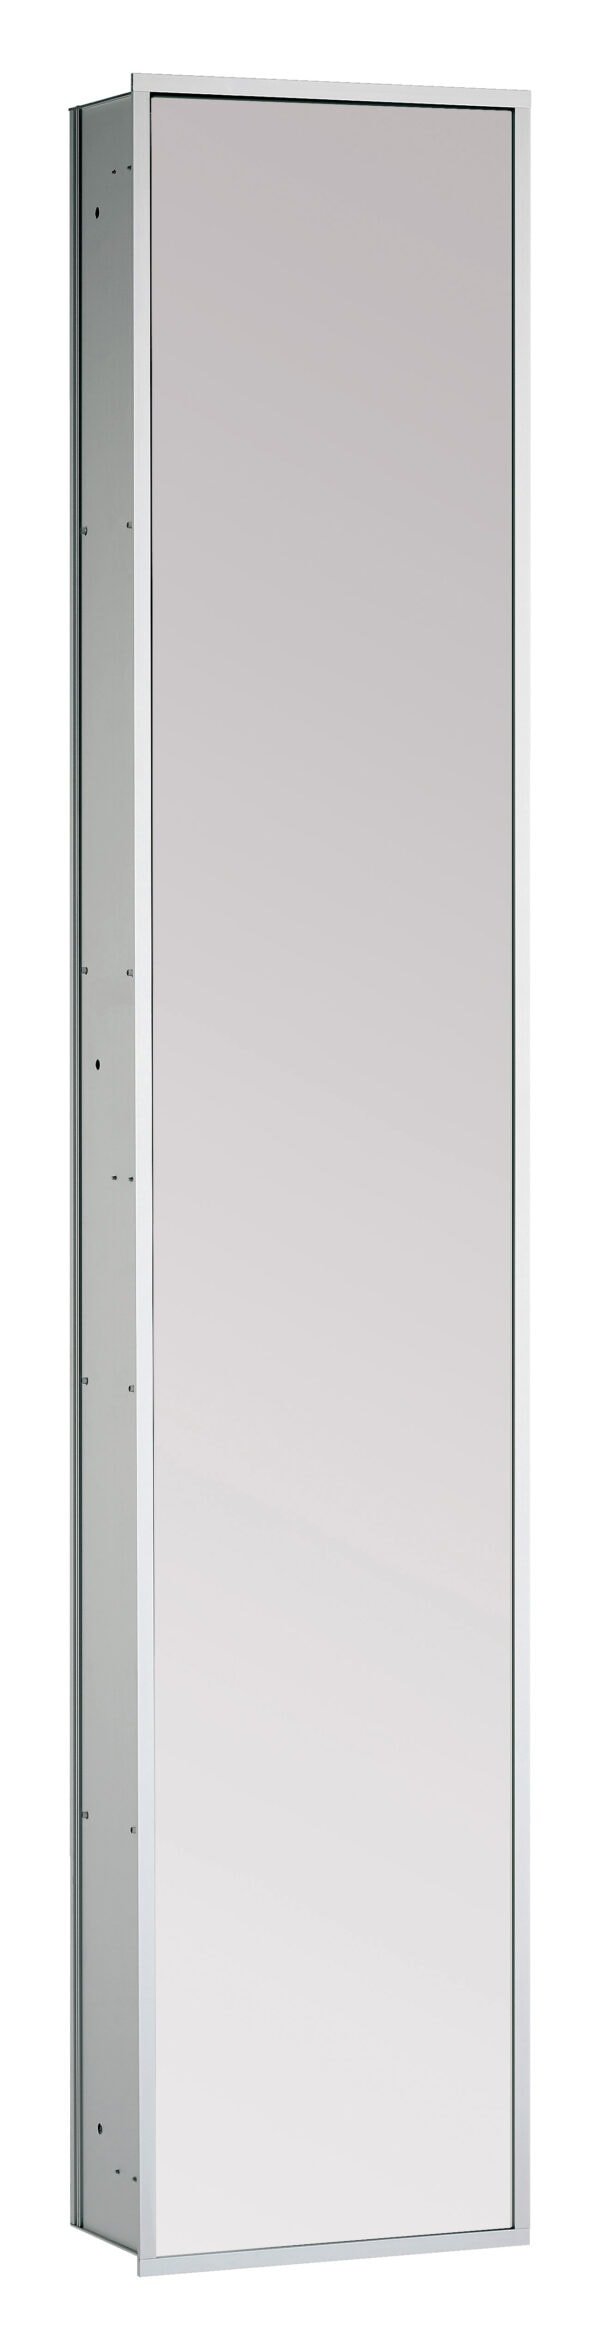 emco asis 300 Cabinet module with mirrored-door - built-in model